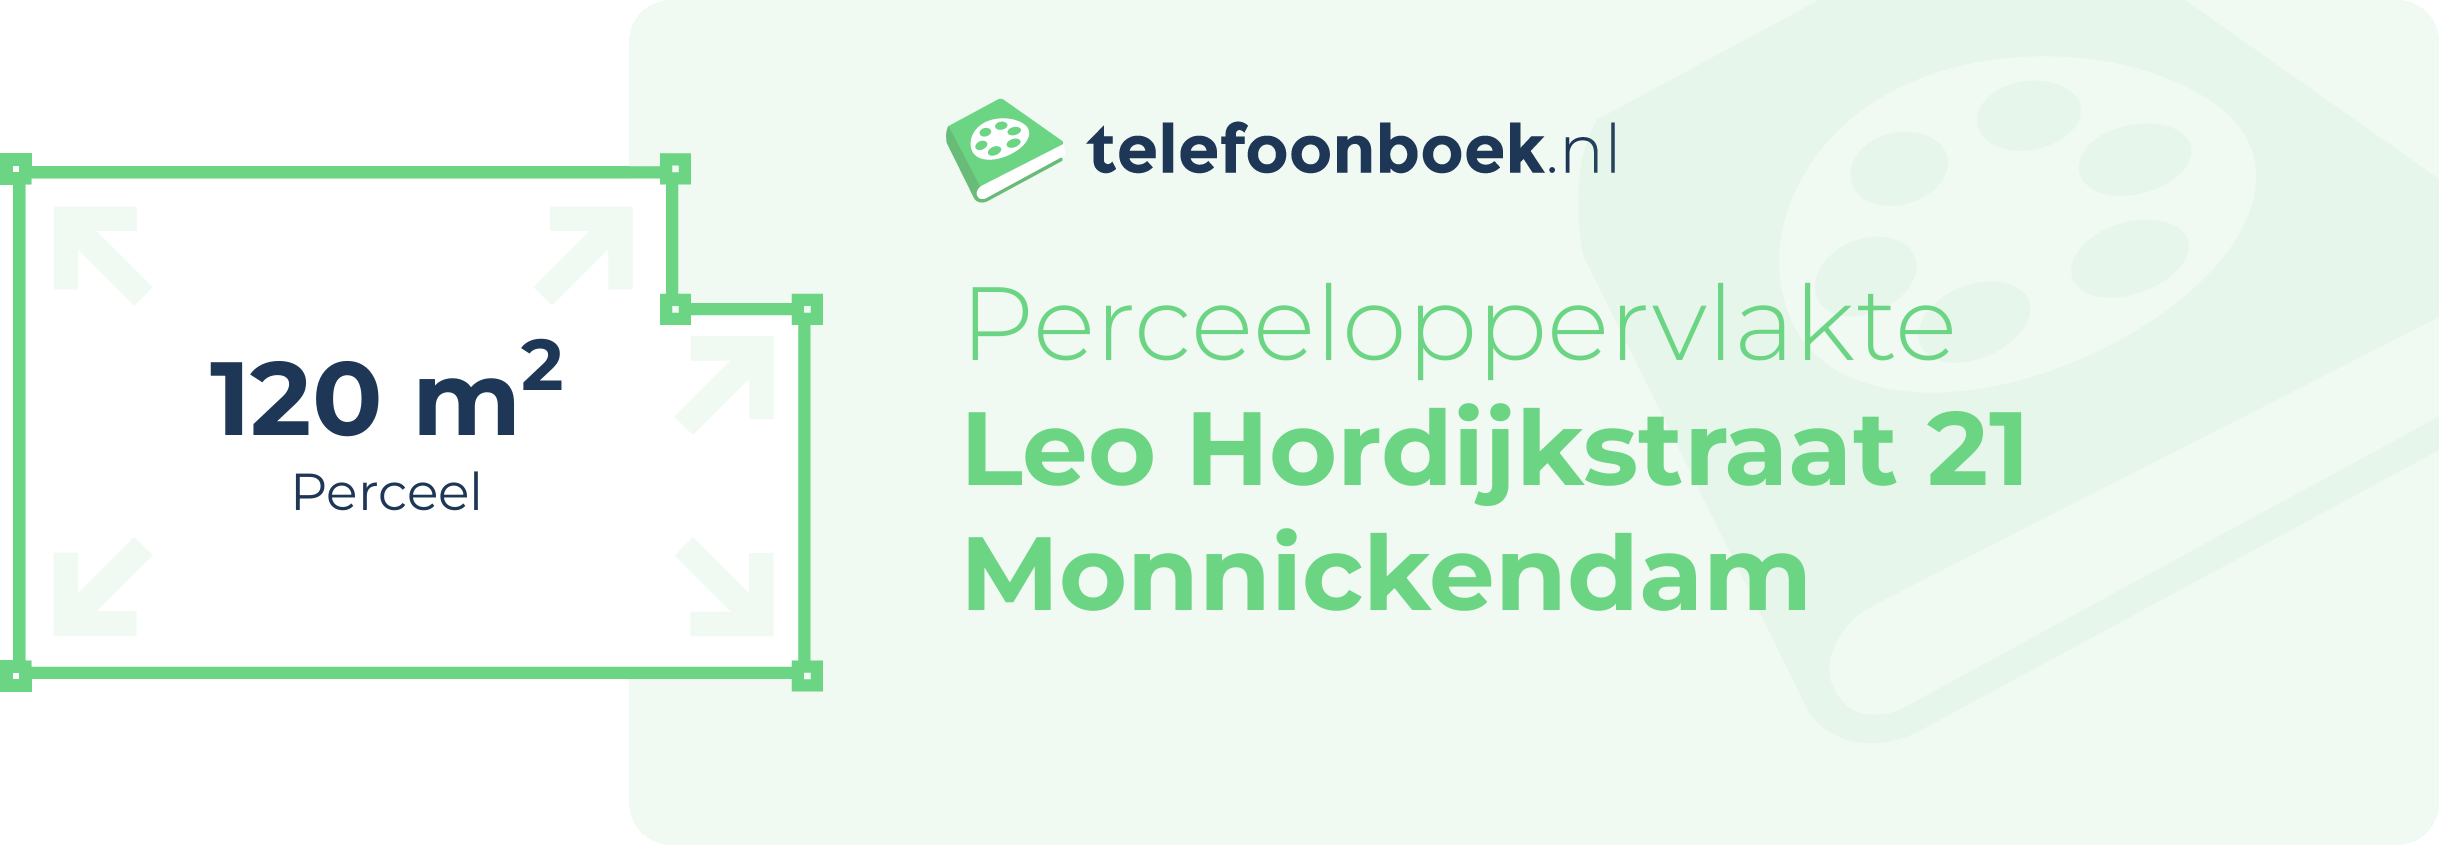 Perceeloppervlakte Leo Hordijkstraat 21 Monnickendam